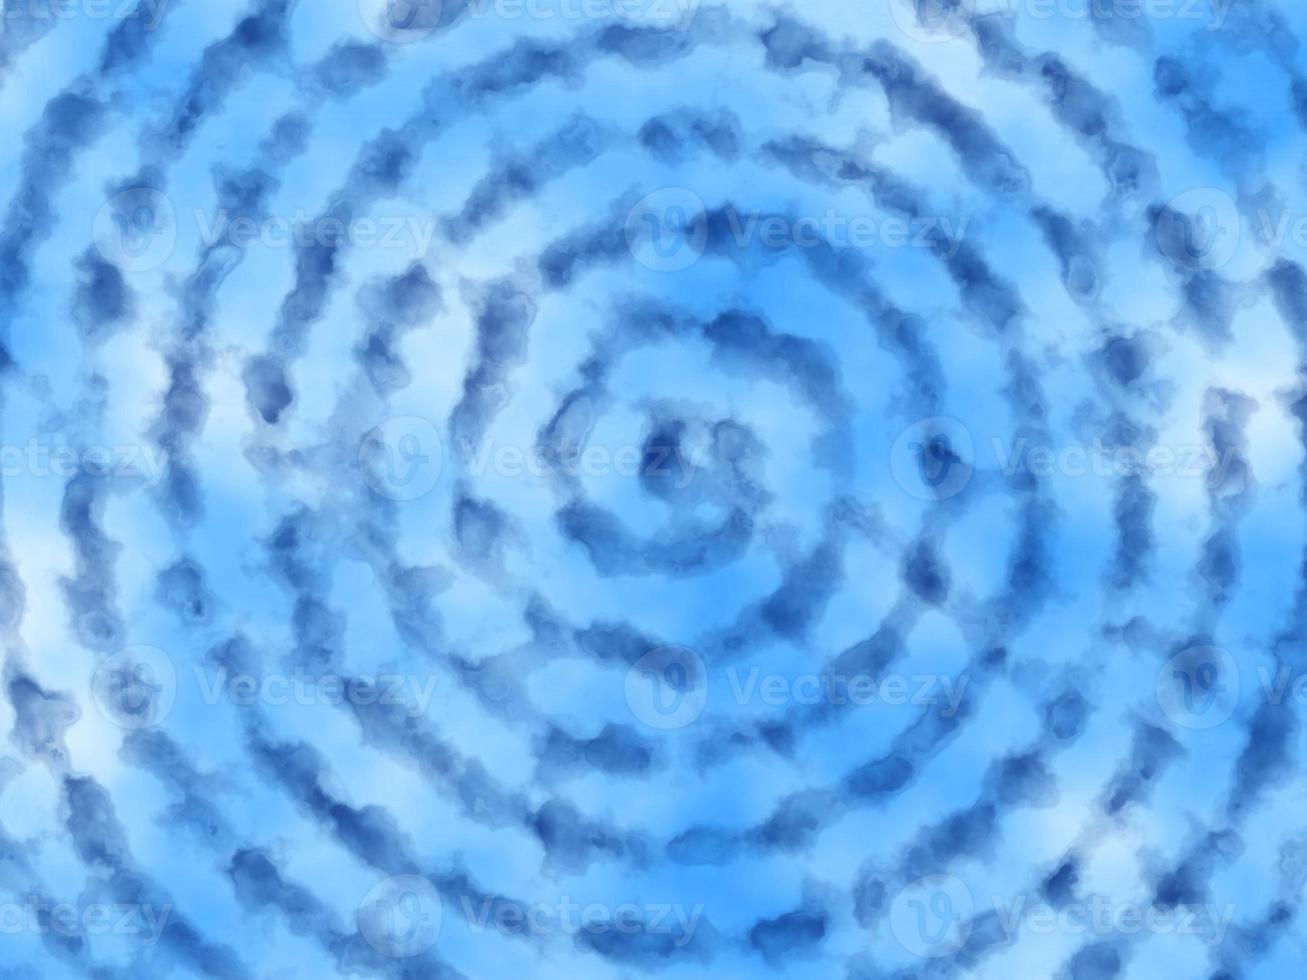 blu acquerello spirale modello sfondo foto